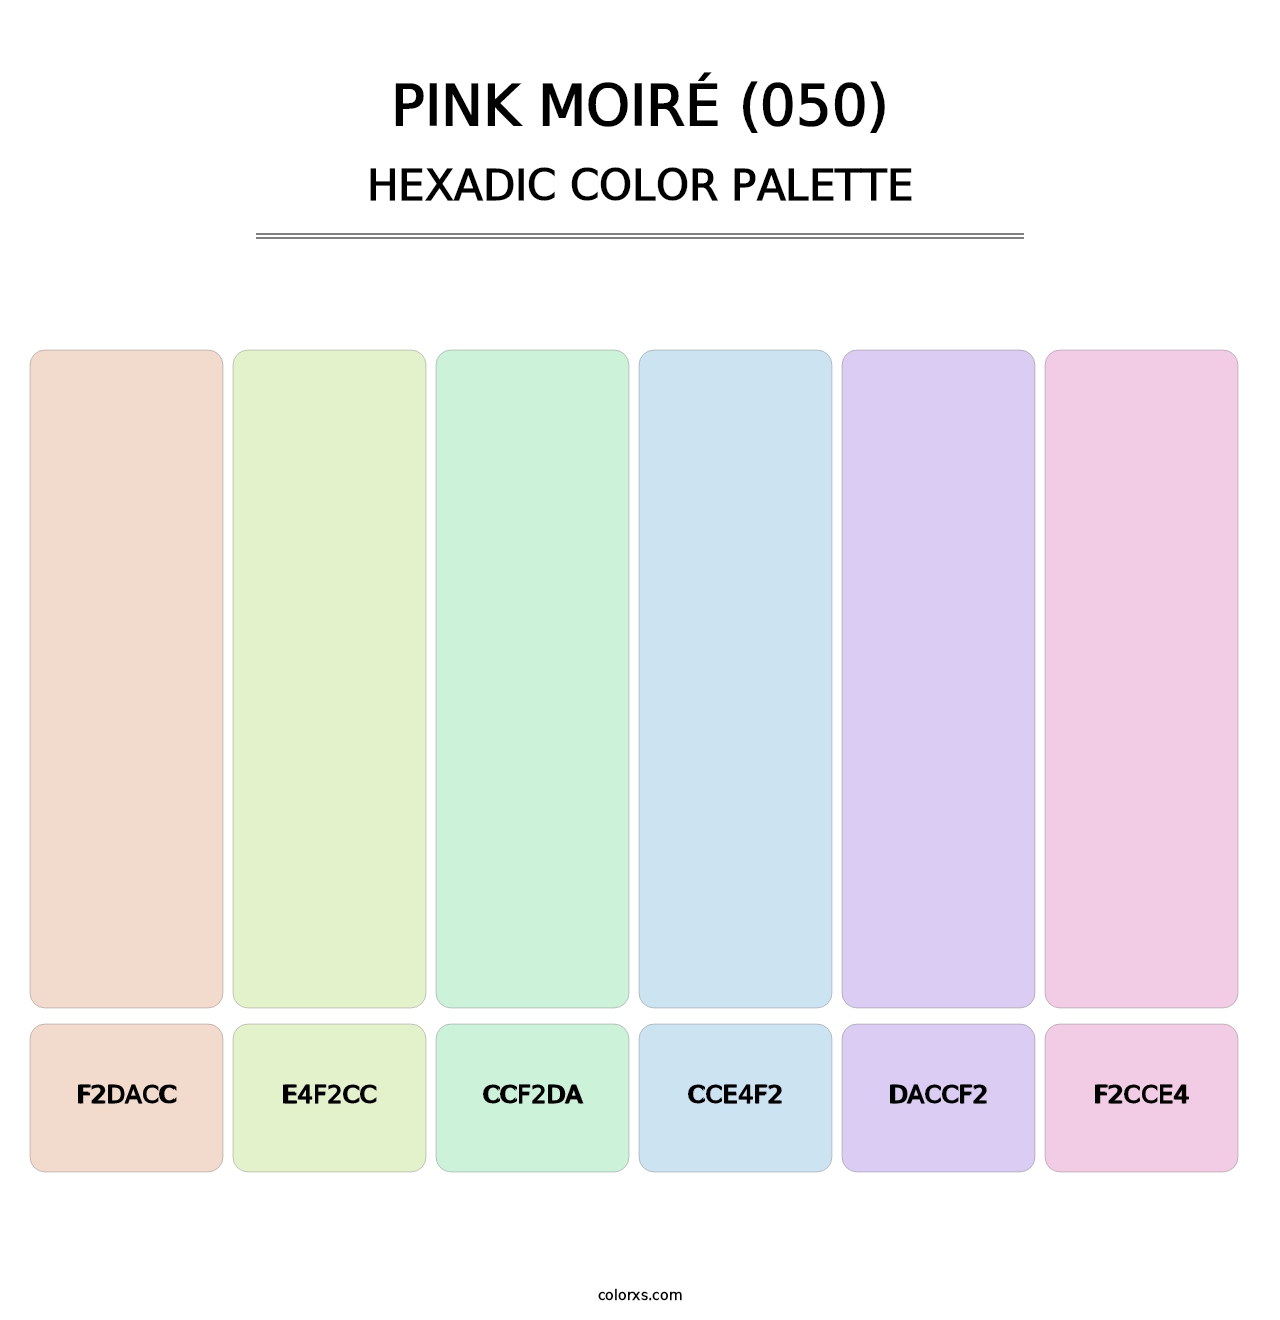 Pink Moiré (050) - Hexadic Color Palette